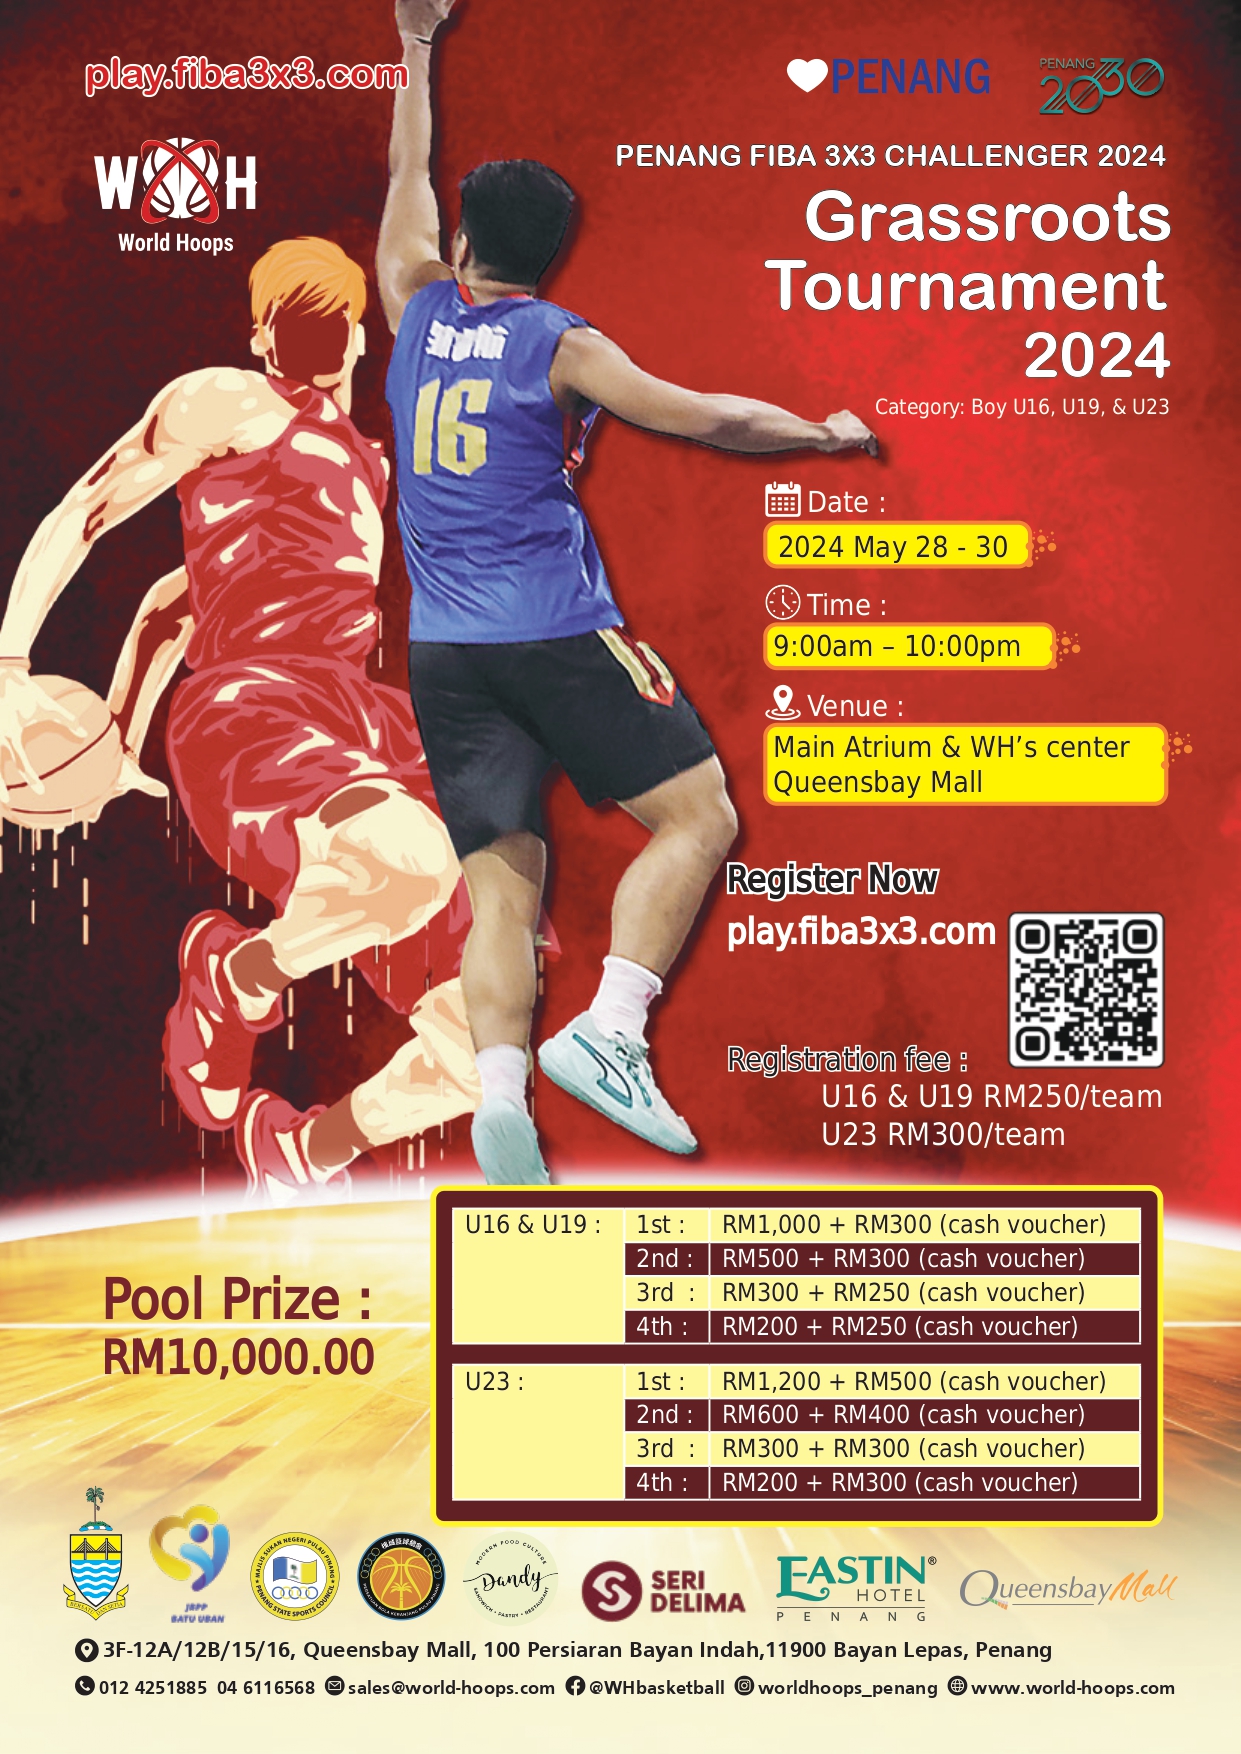 Penang FIBA 3X3 Challenger basketball is back